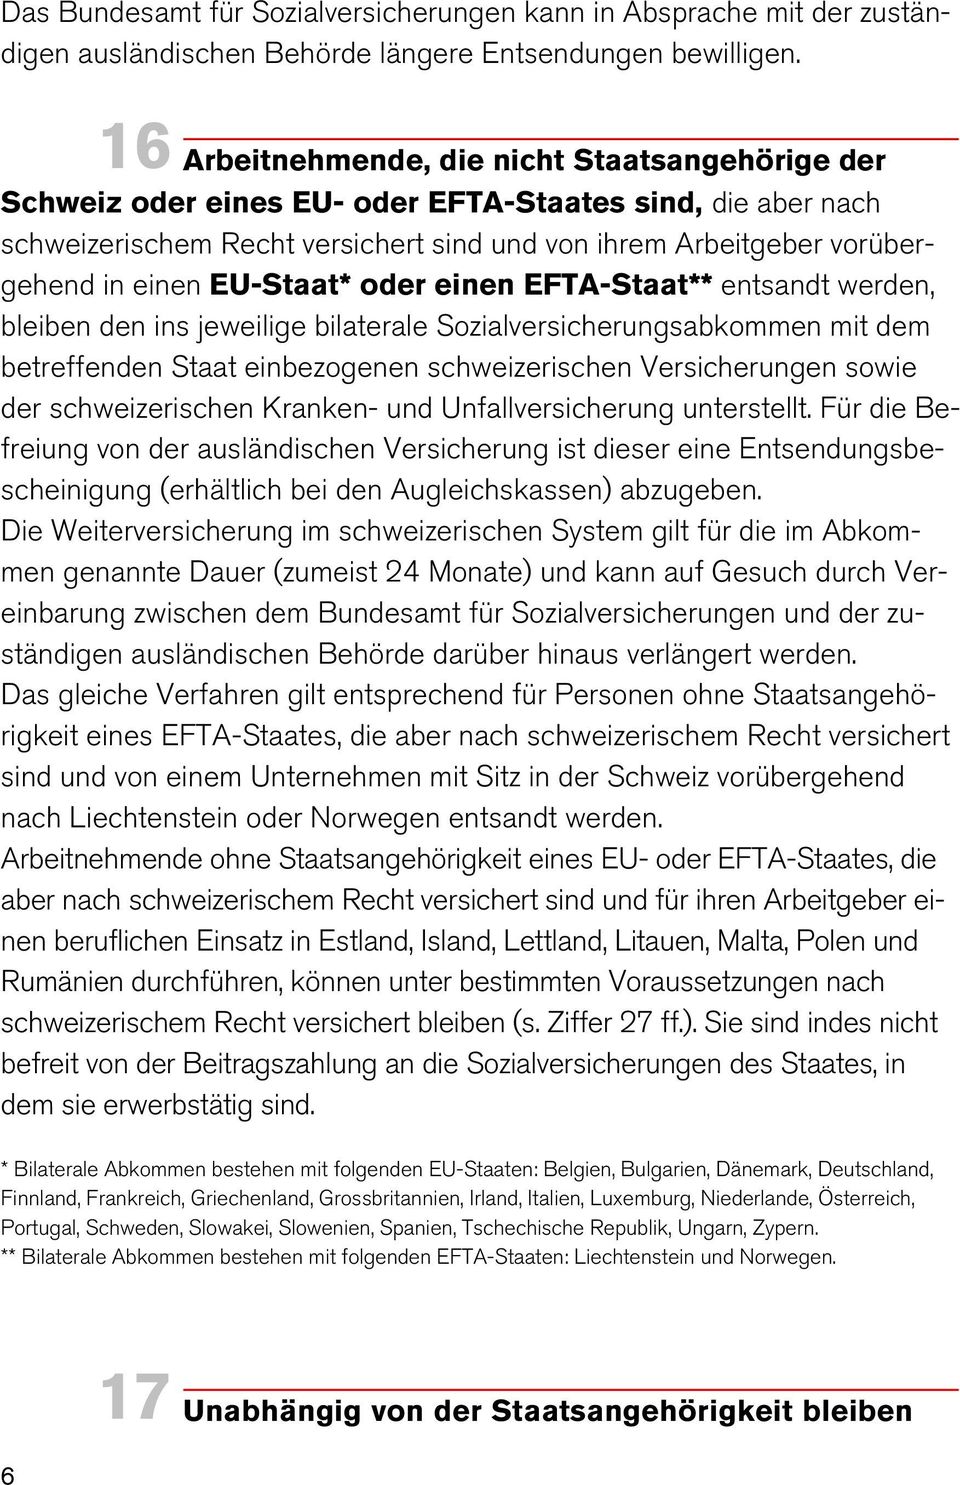 EU-Staat* oder einen EFTA-Staat** entsandt werden, bleiben den ins jeweilige bilaterale Sozialversicherungsabkommen mit dem betreffenden Staat einbezogenen schweizerischen Versicherungen sowie der